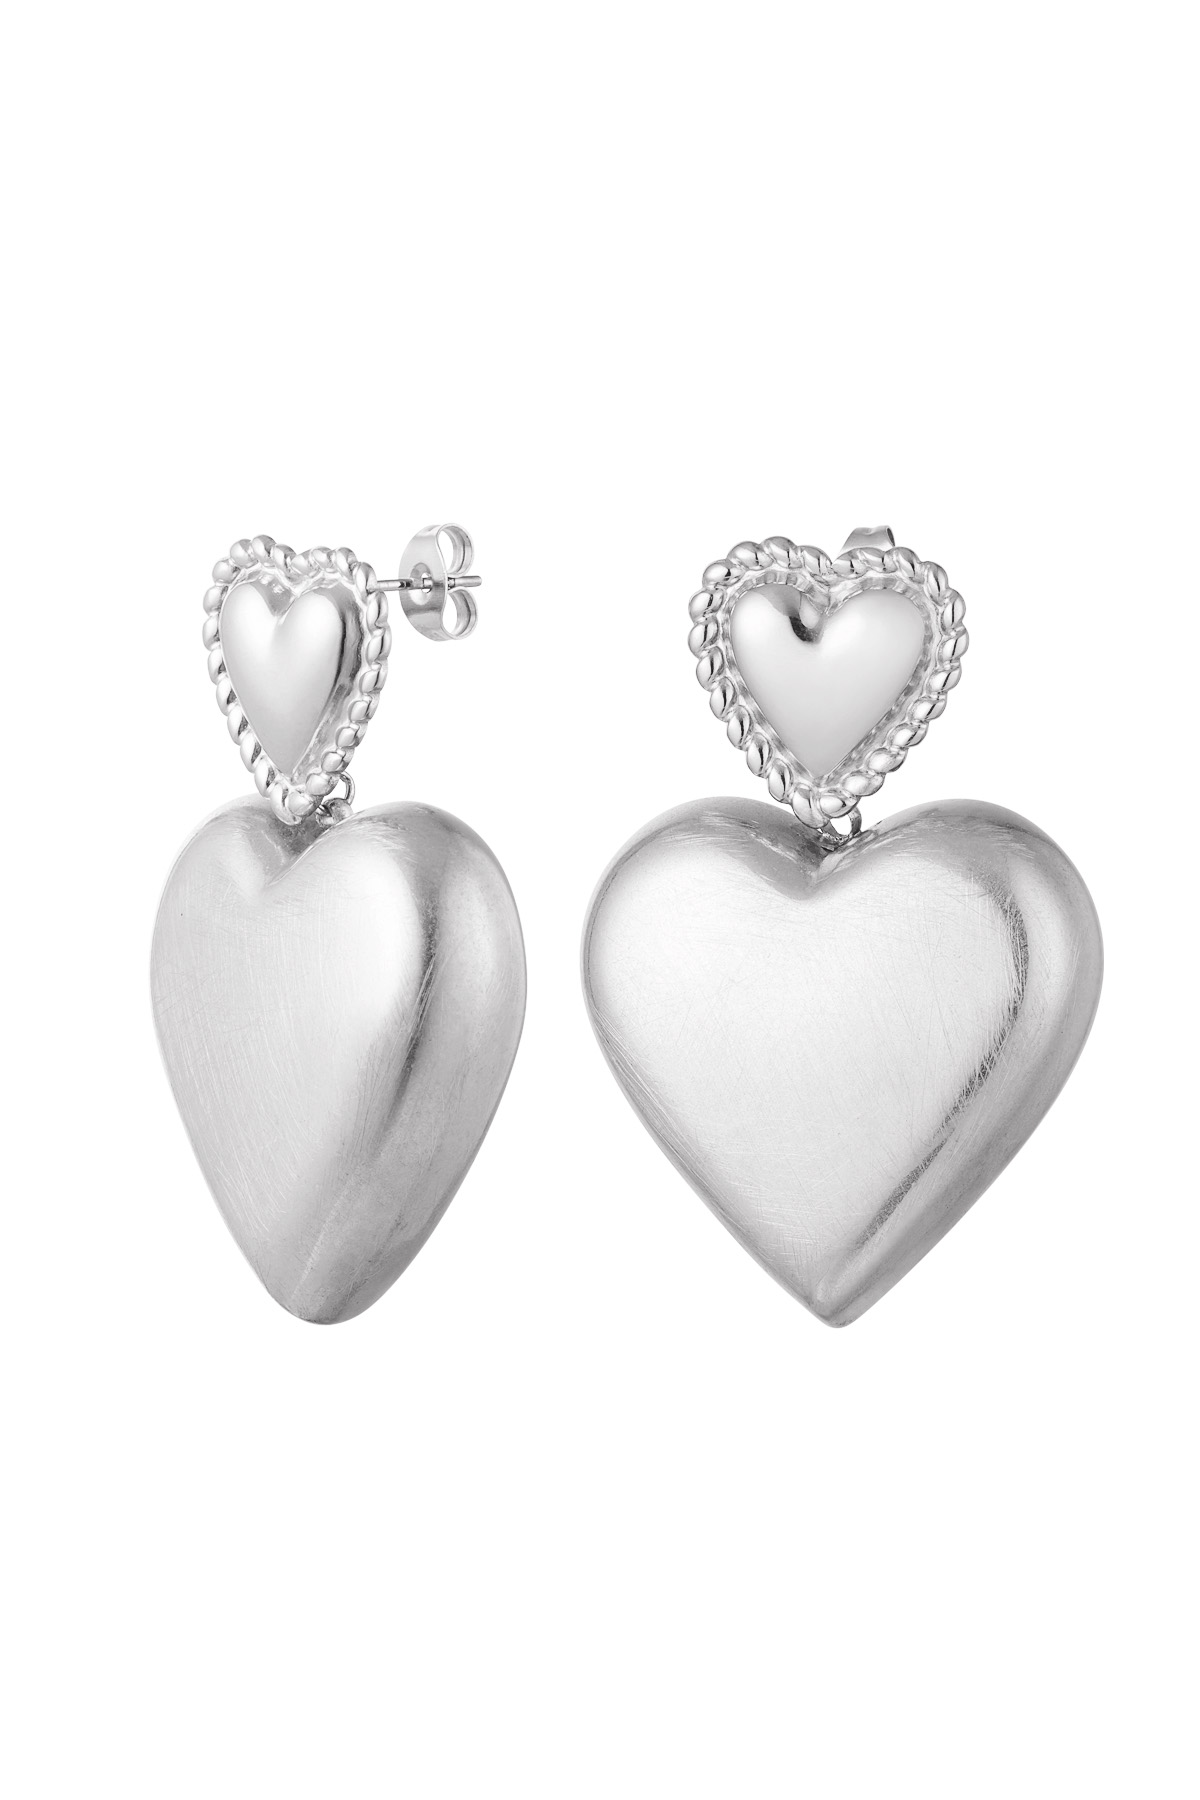 Earrings hearts - silver Stainless Steel